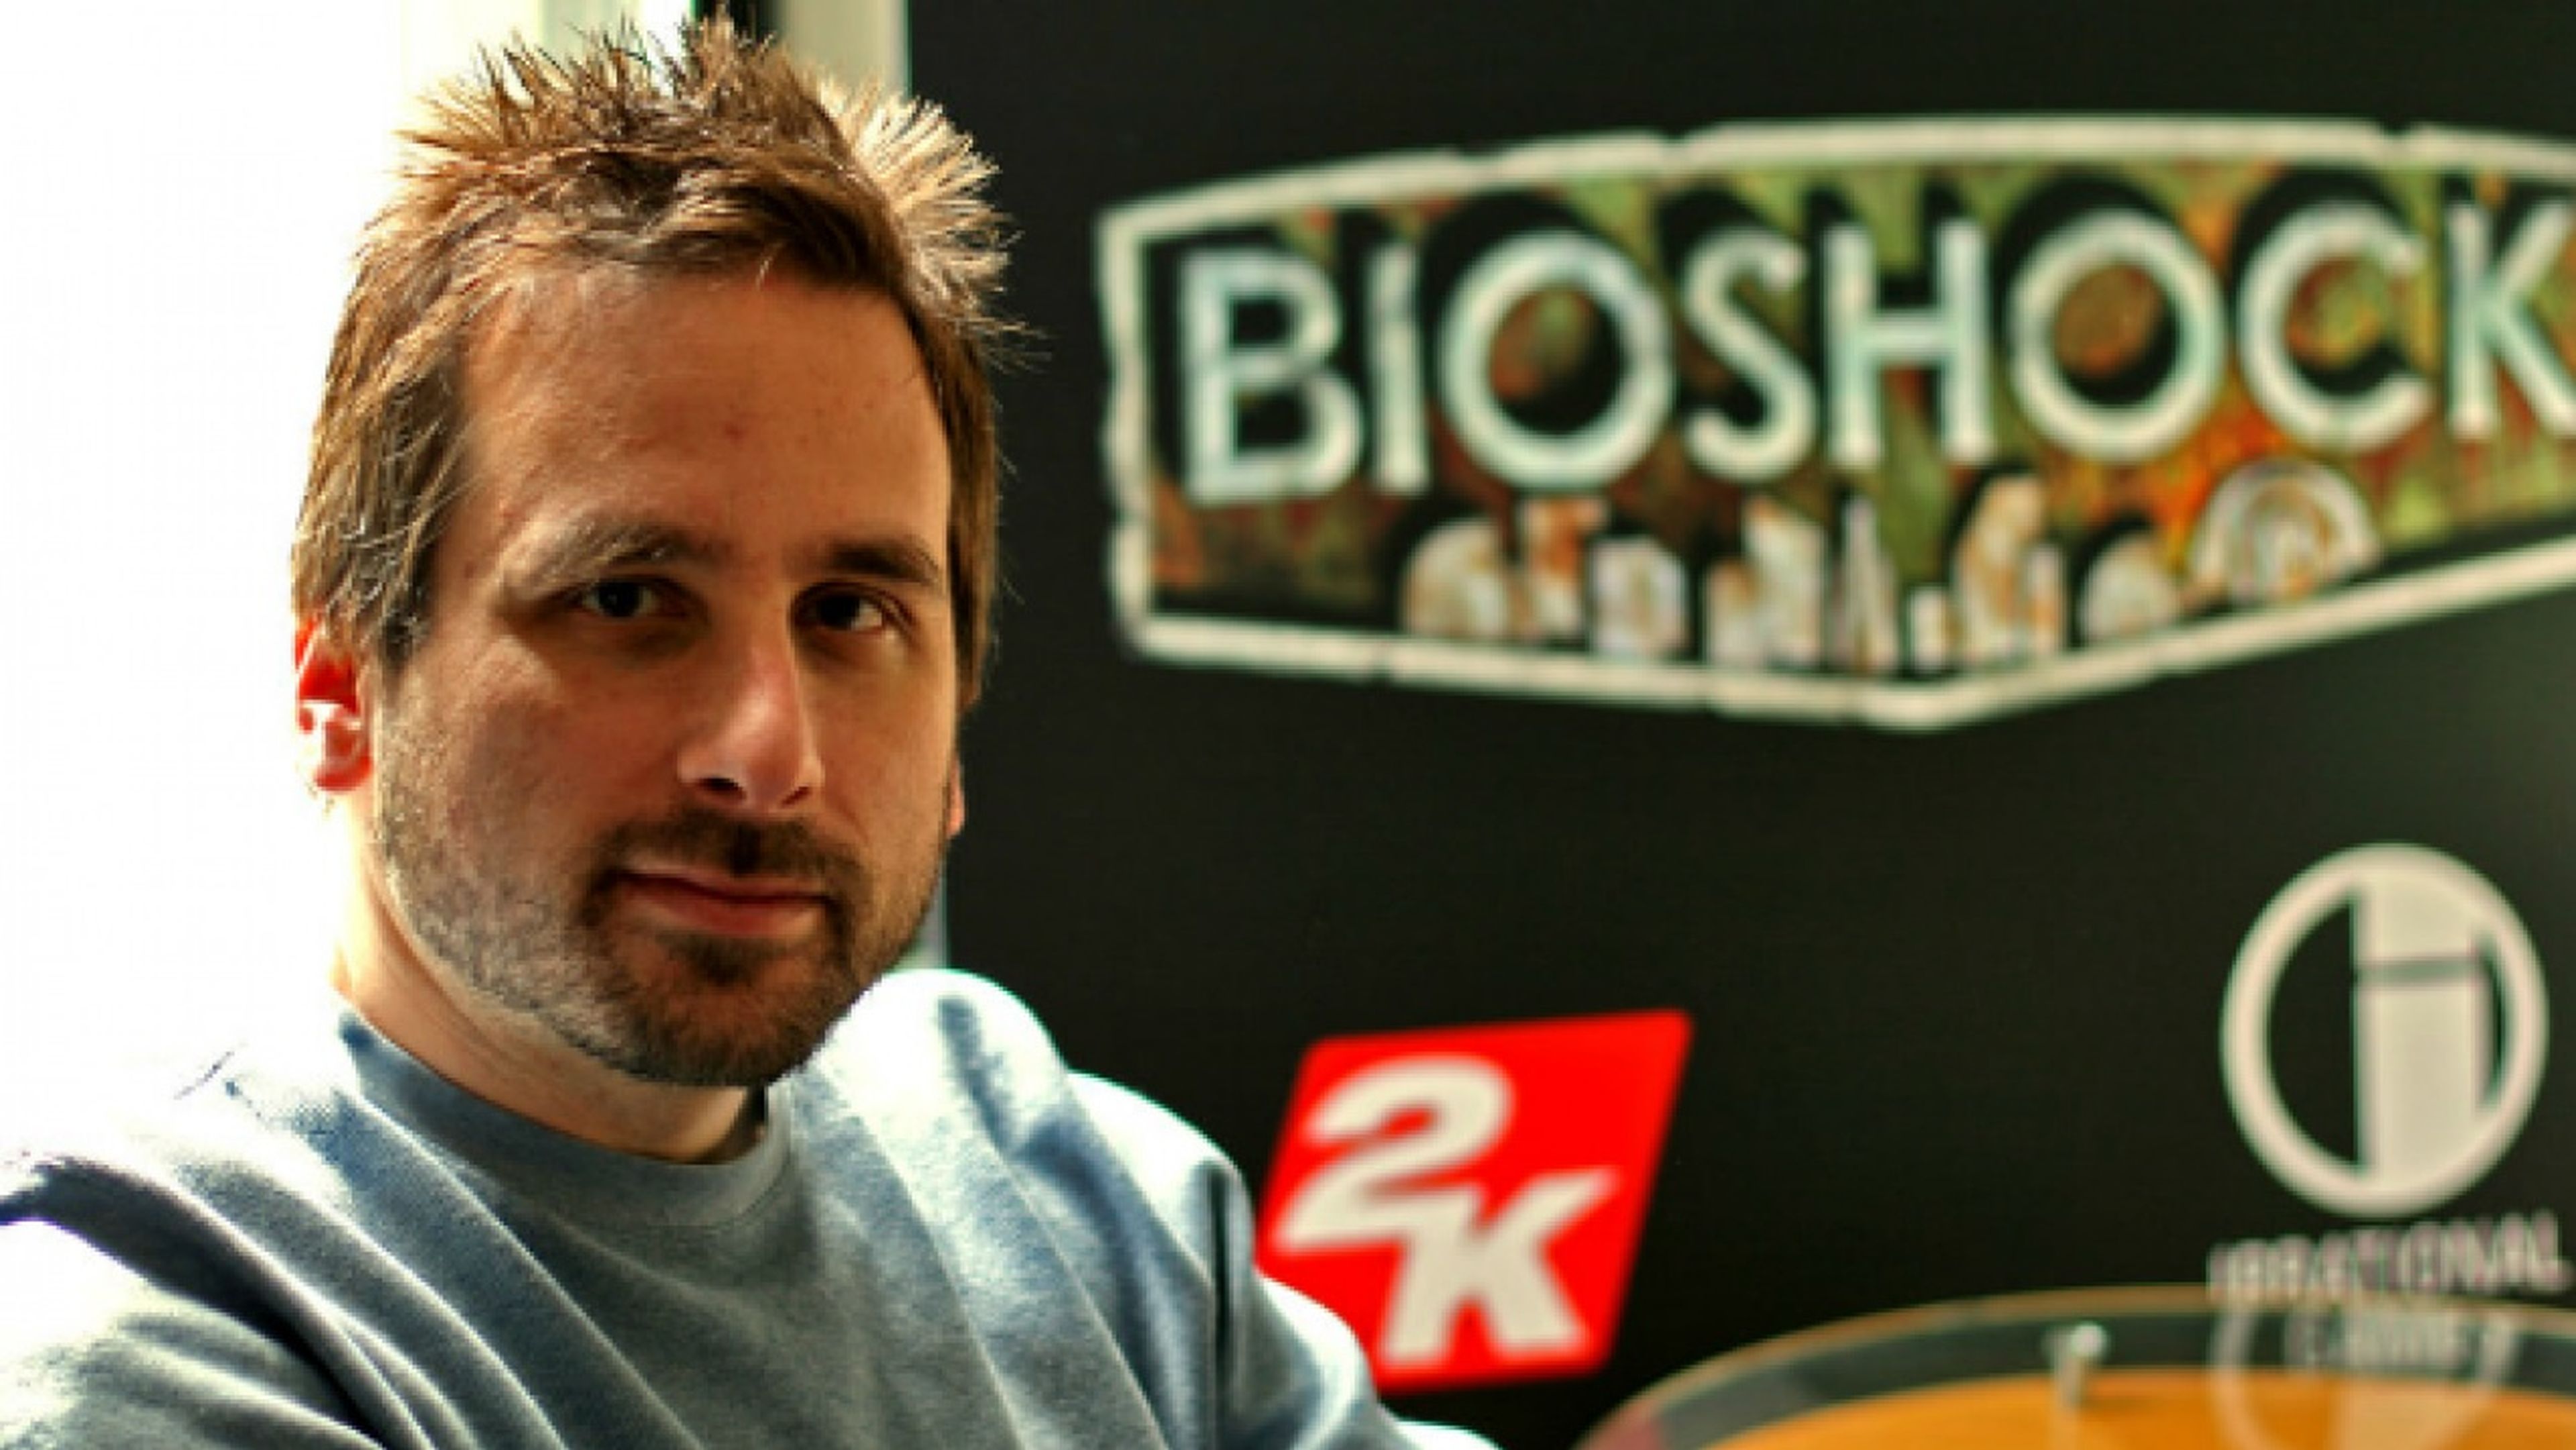 Ken Levine (BioShock)